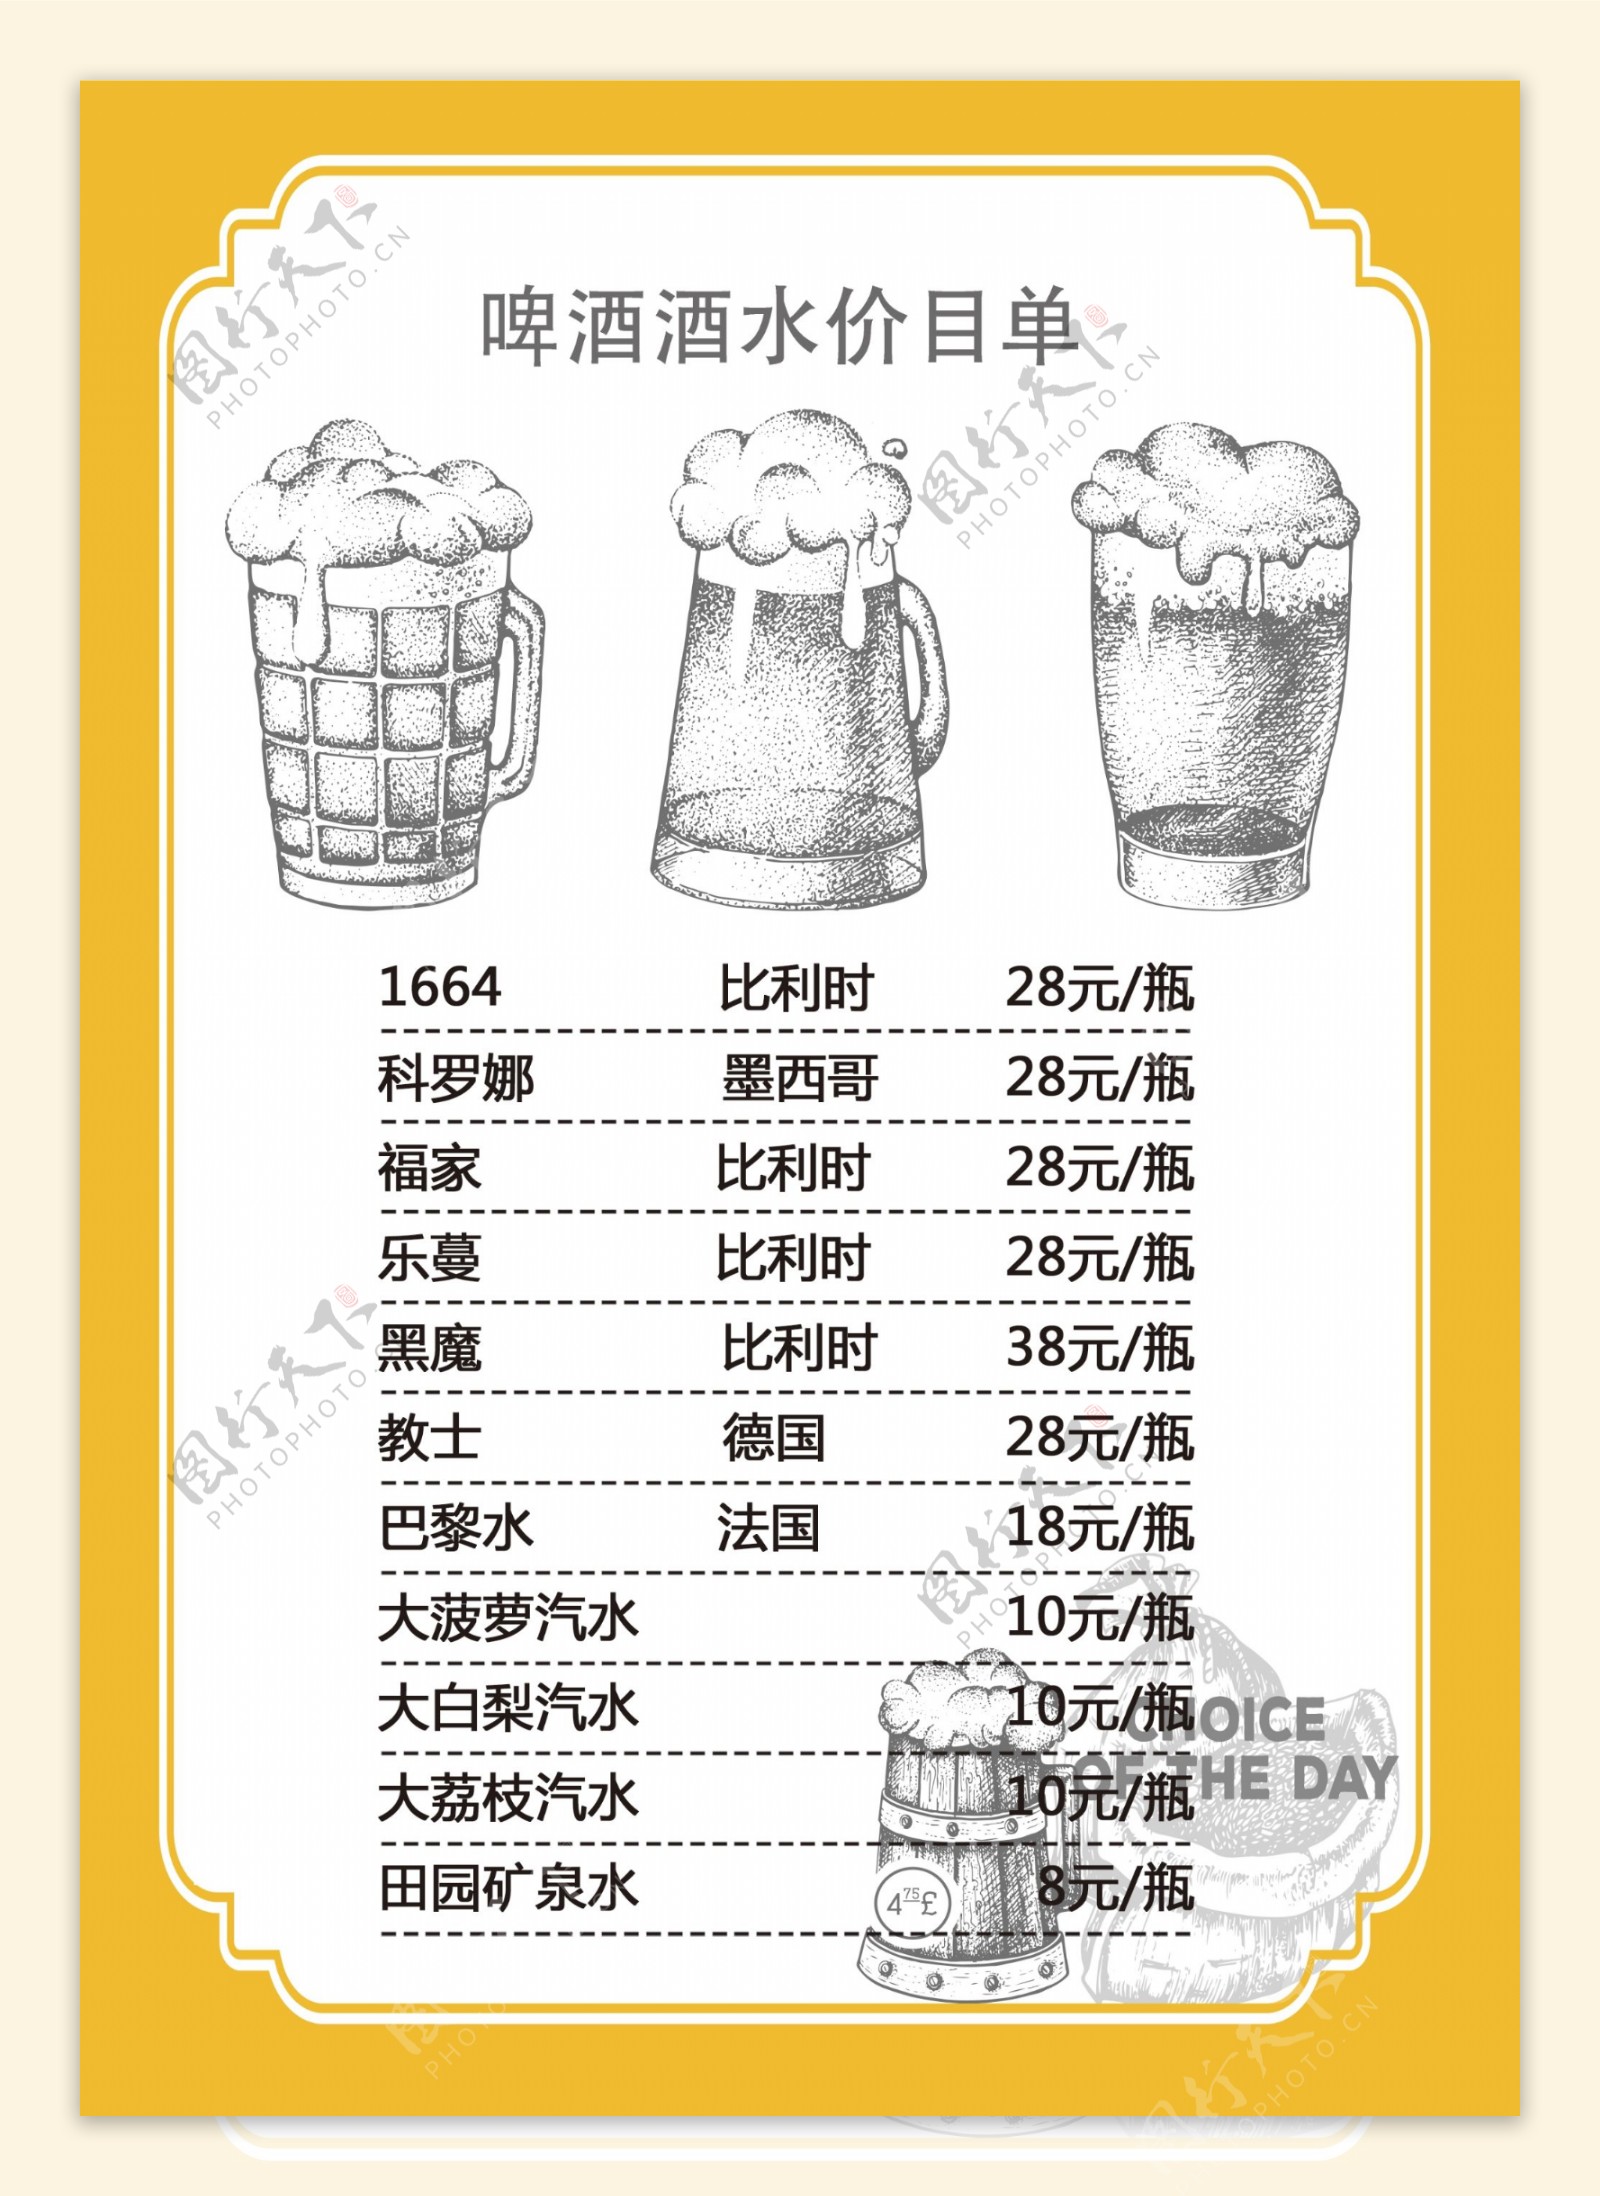 啤酒菜单